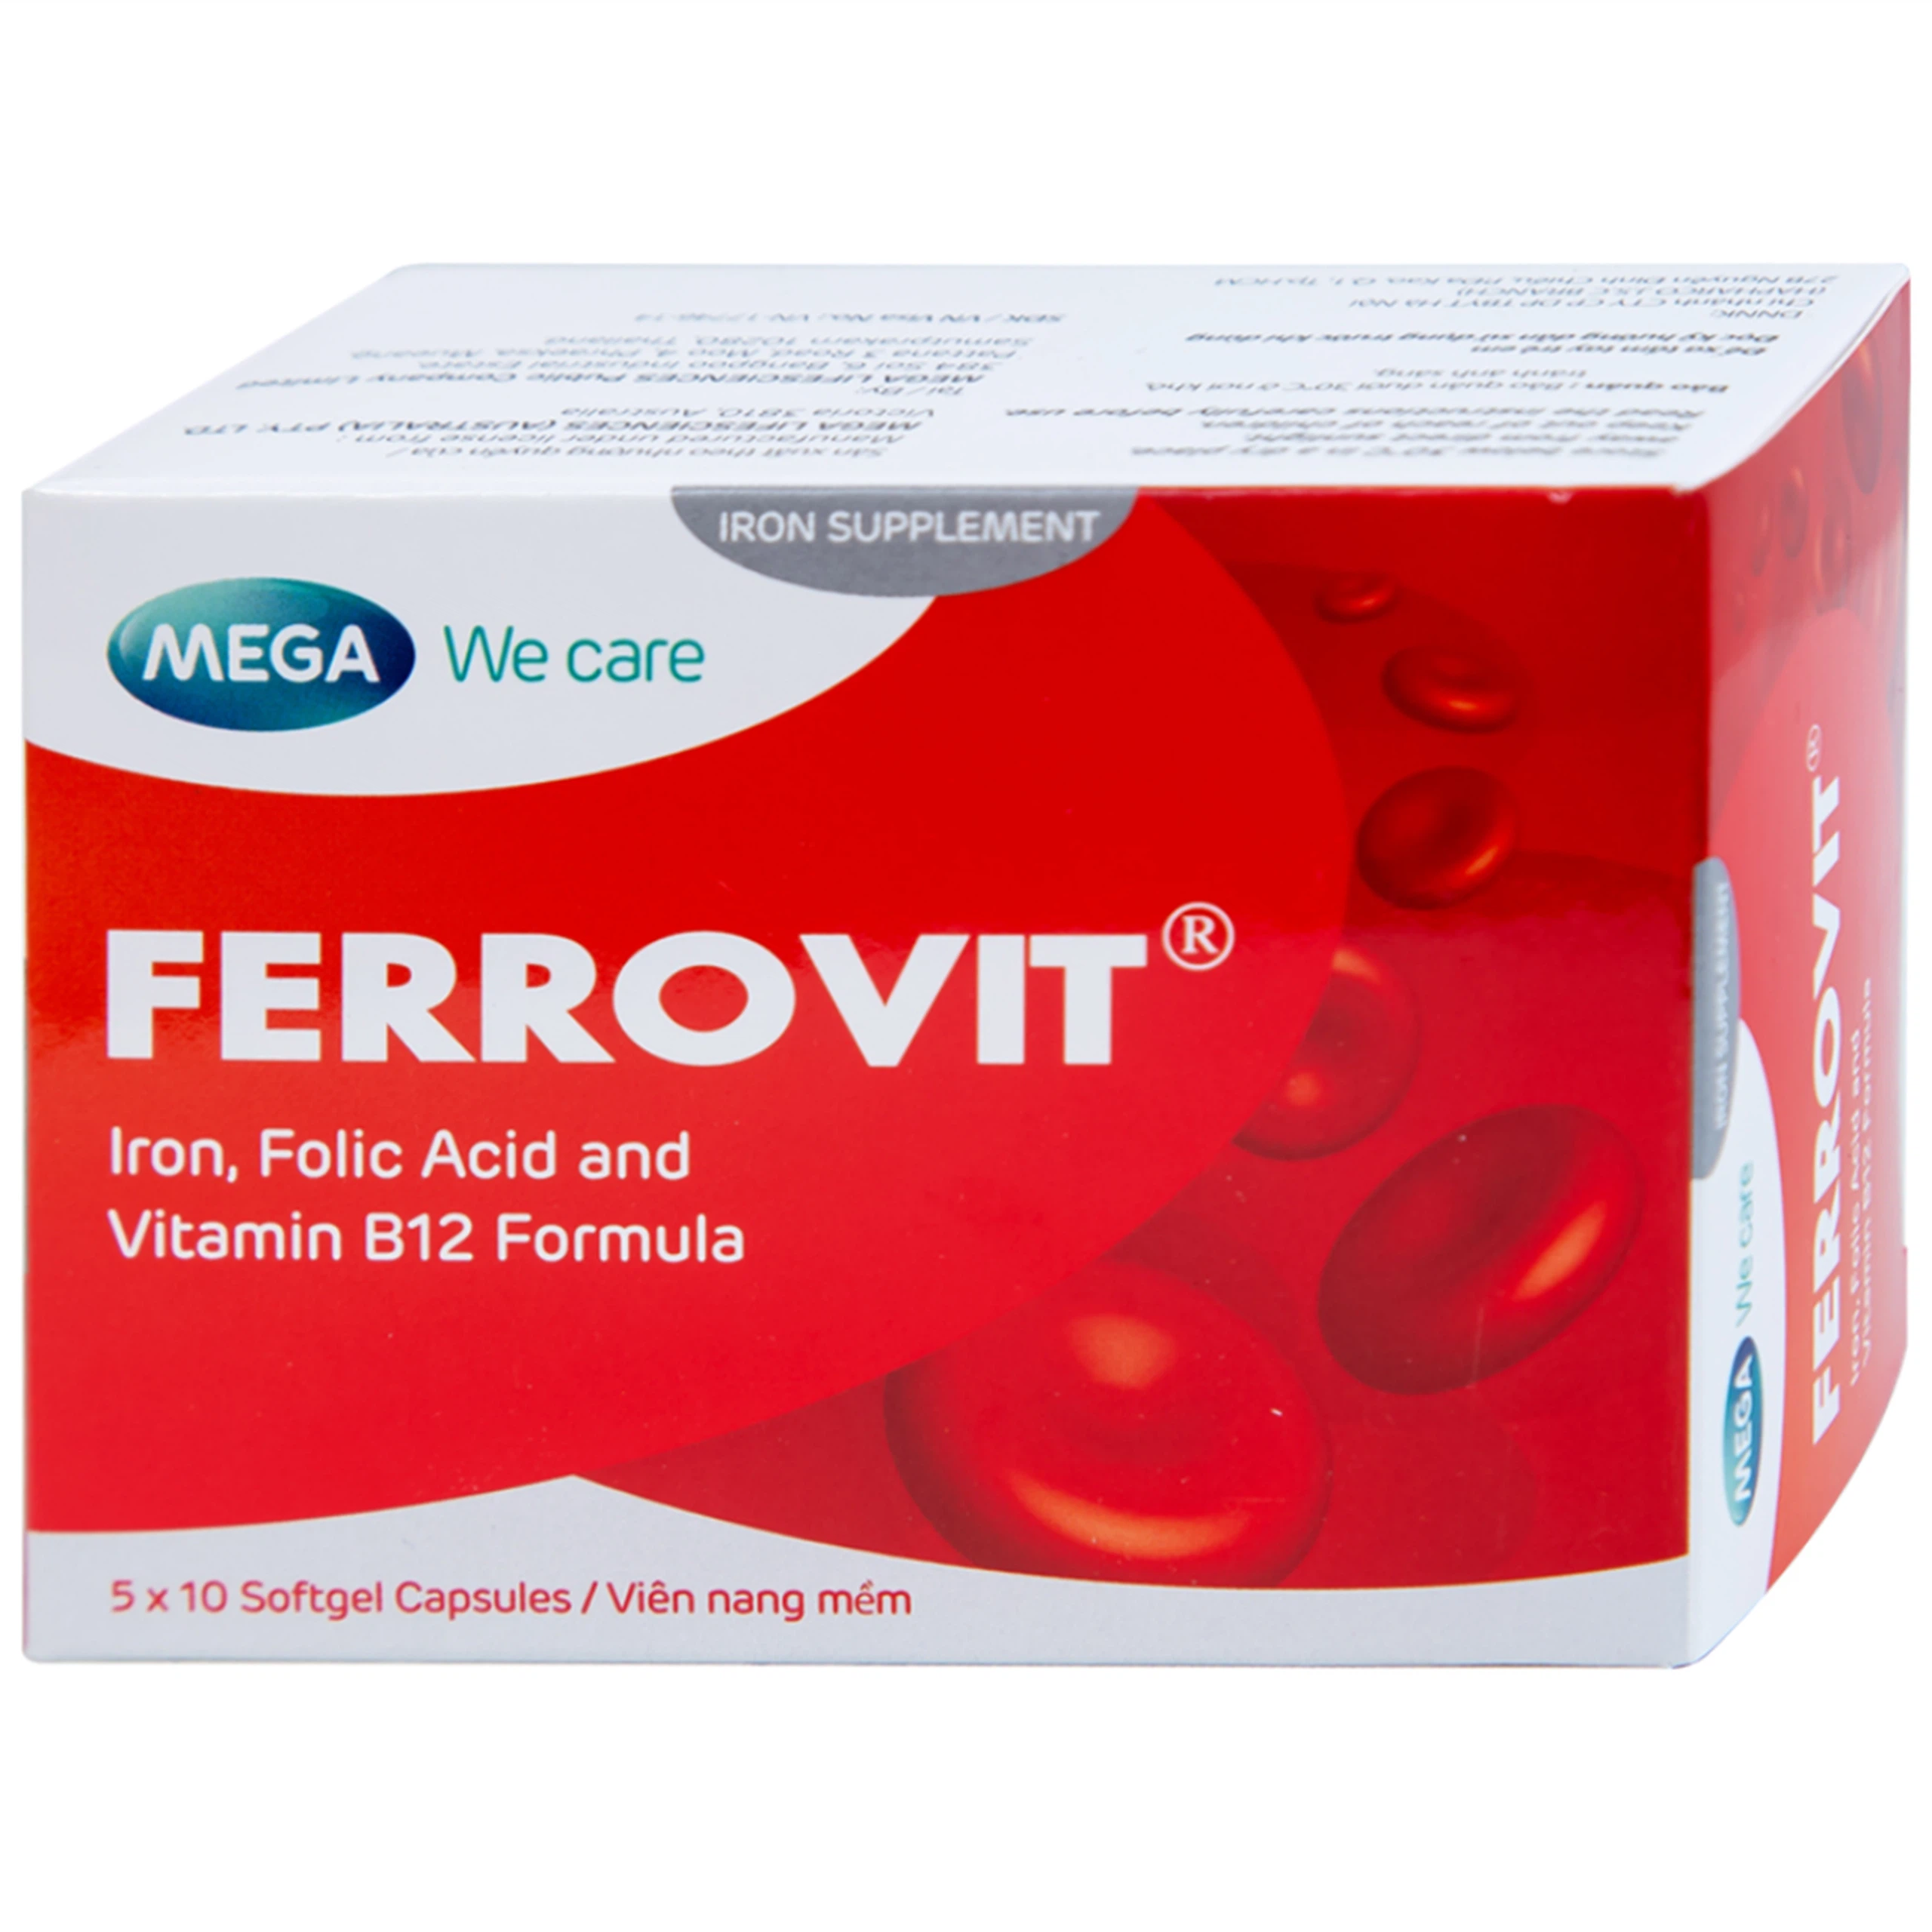 Thuốc Ferrovit MEGA We care điều trị thiếu máu do thiếu sắt (5 vỉ x 10 viên)